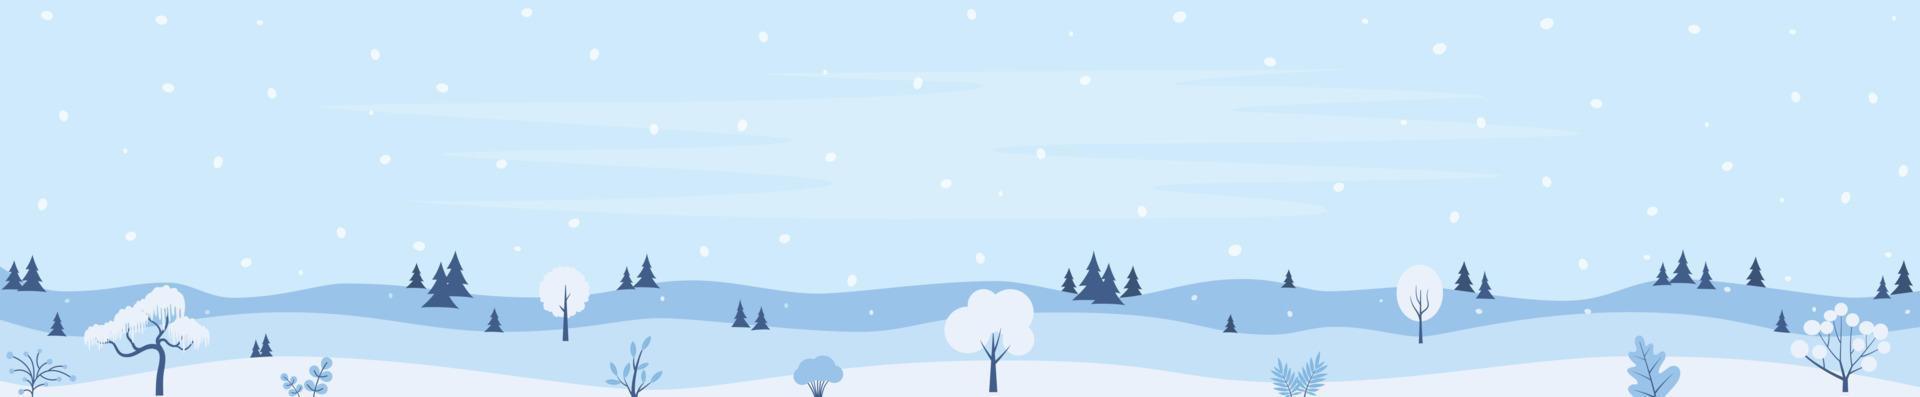 vinter- landskap bakgrund, tall snö träd, skogen. horisontell baner mall med vinter- landskap snöig bakgrund. vektor illustration.